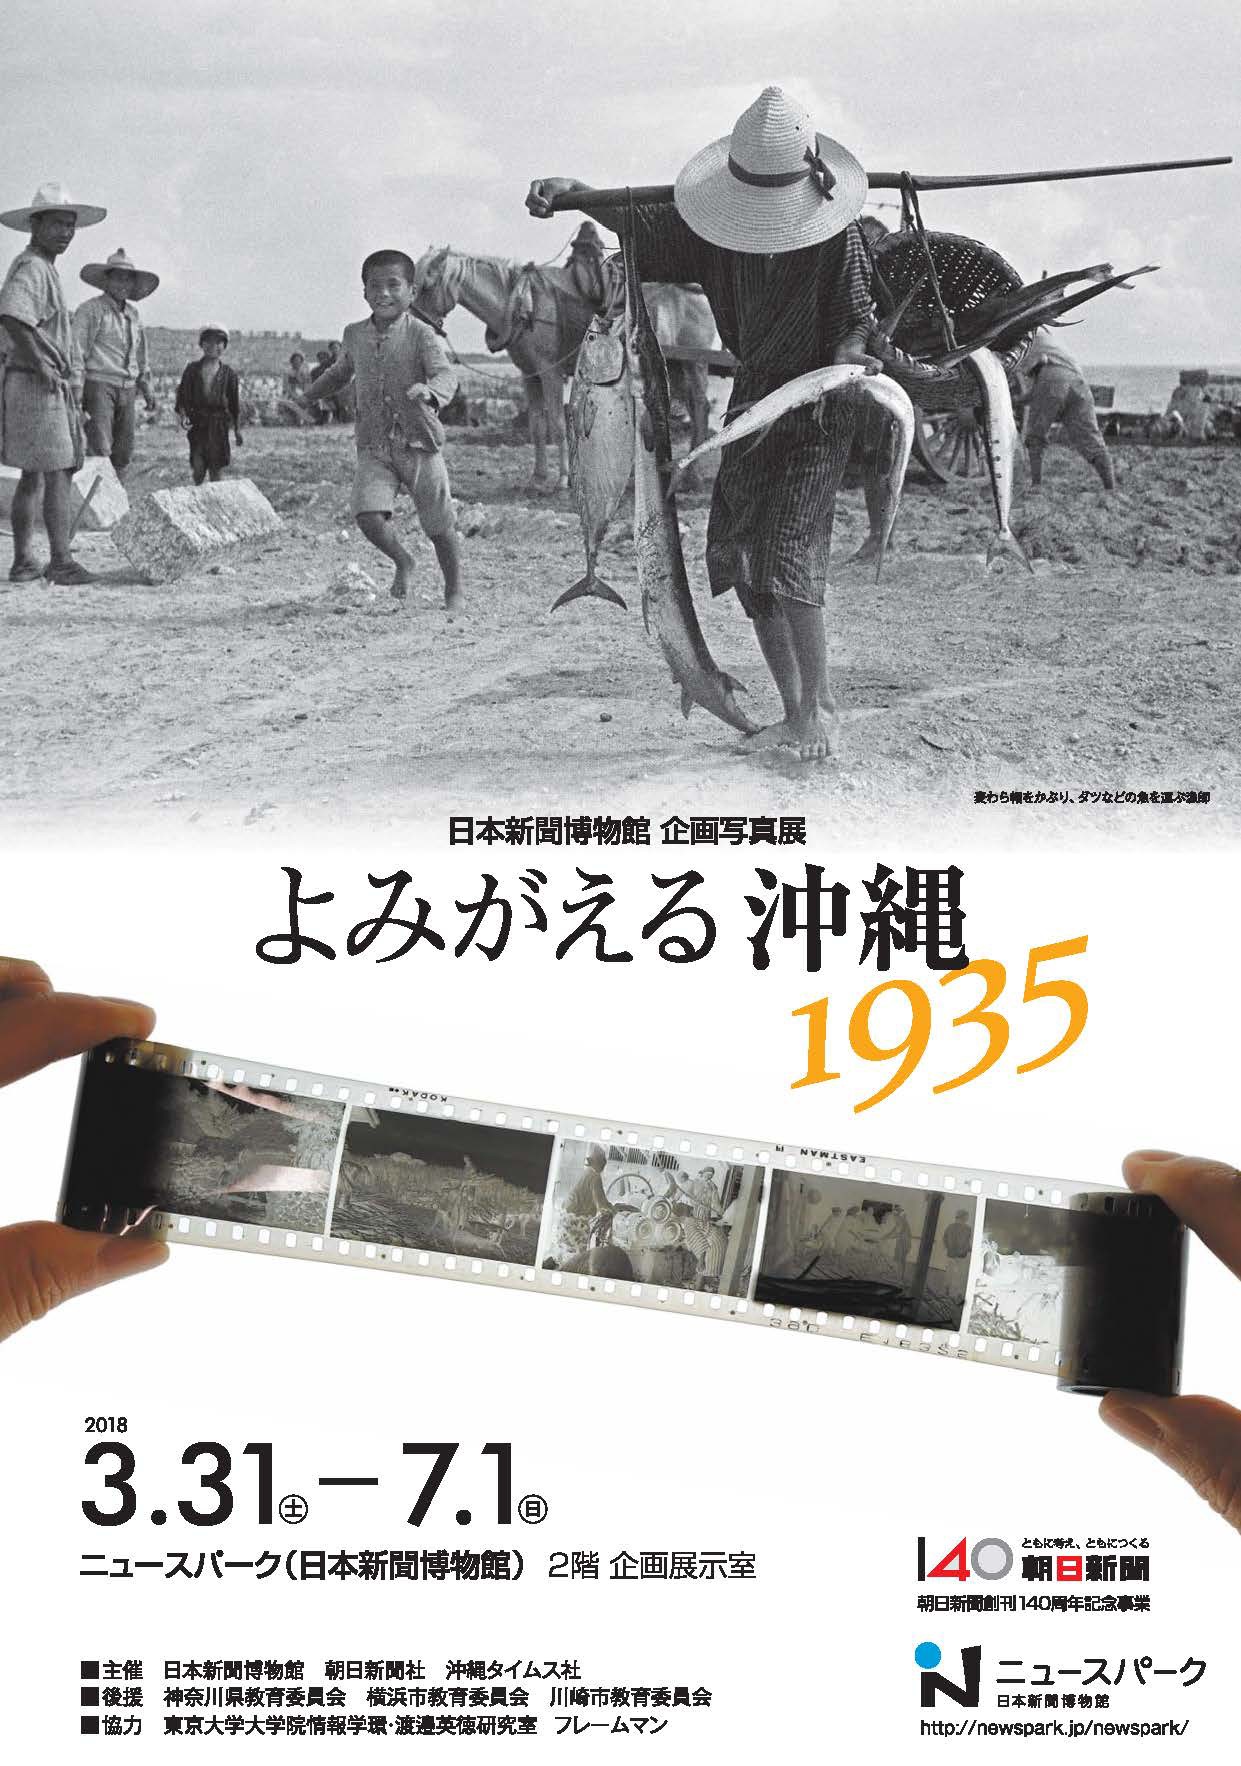 よみがえる沖縄1935 | 企画展 | ニュースパーク（日本新聞博物館）